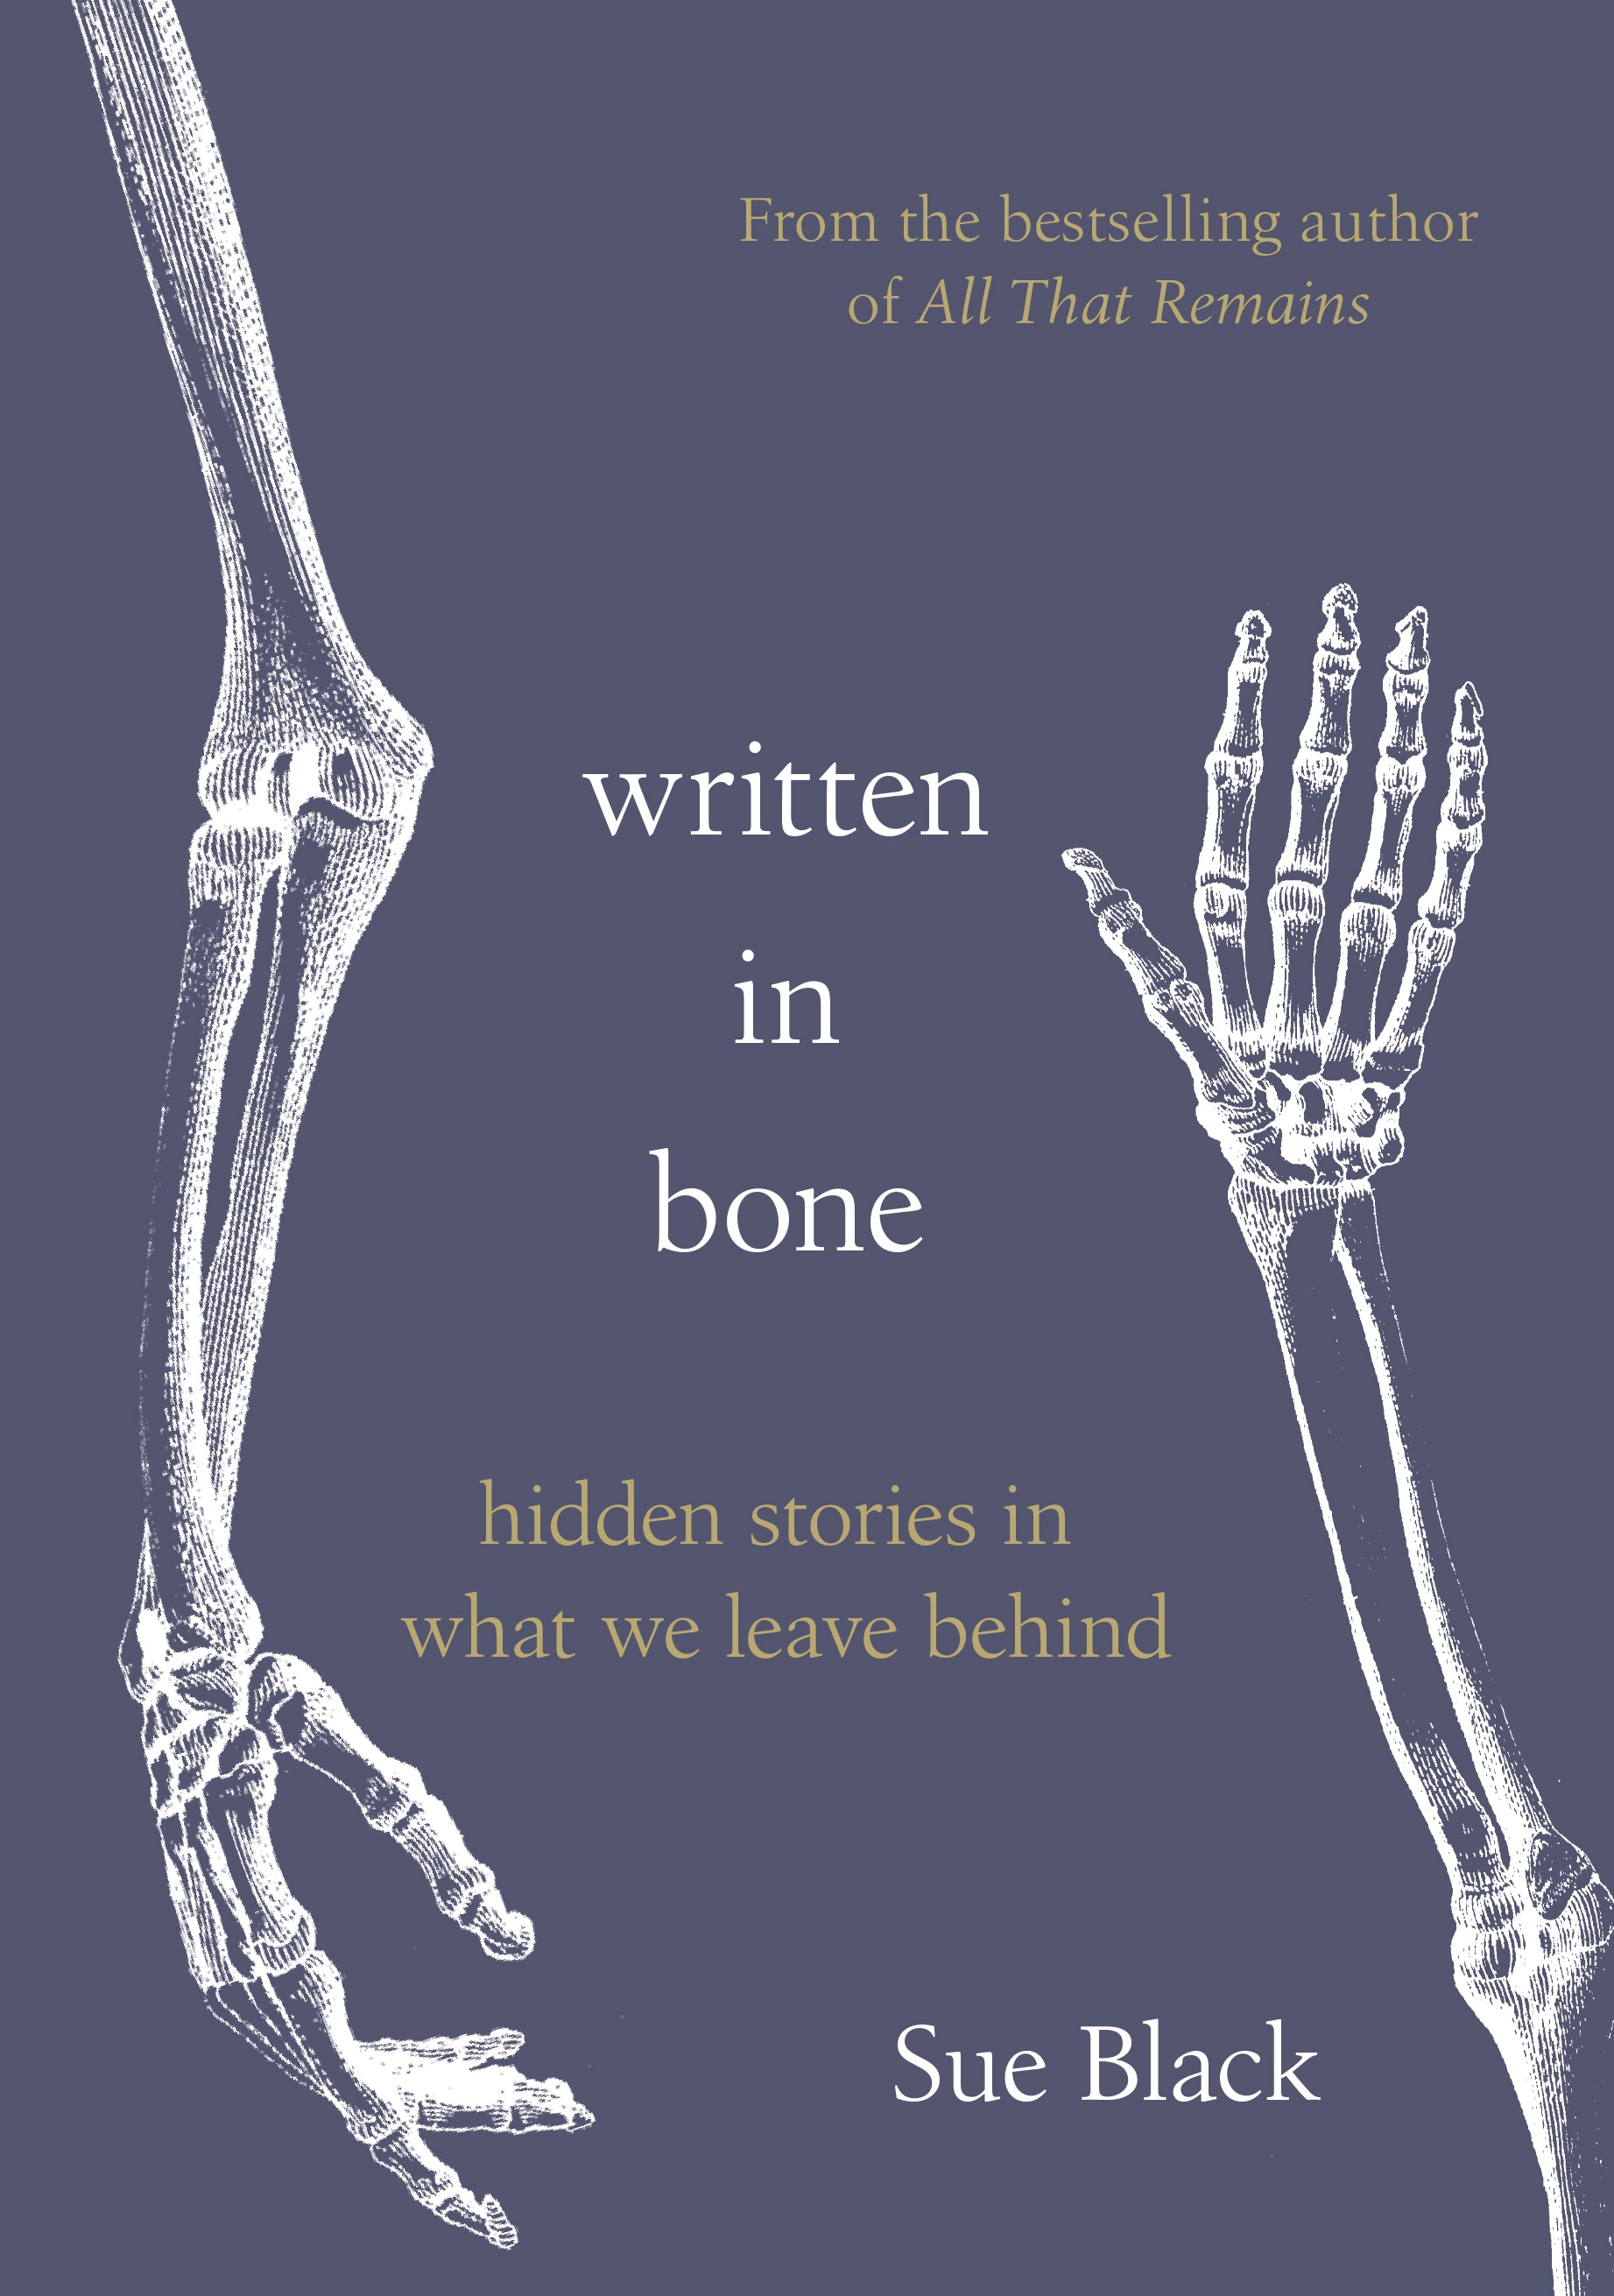 Book “Written In Bone” by Sue Black — September 3, 2020